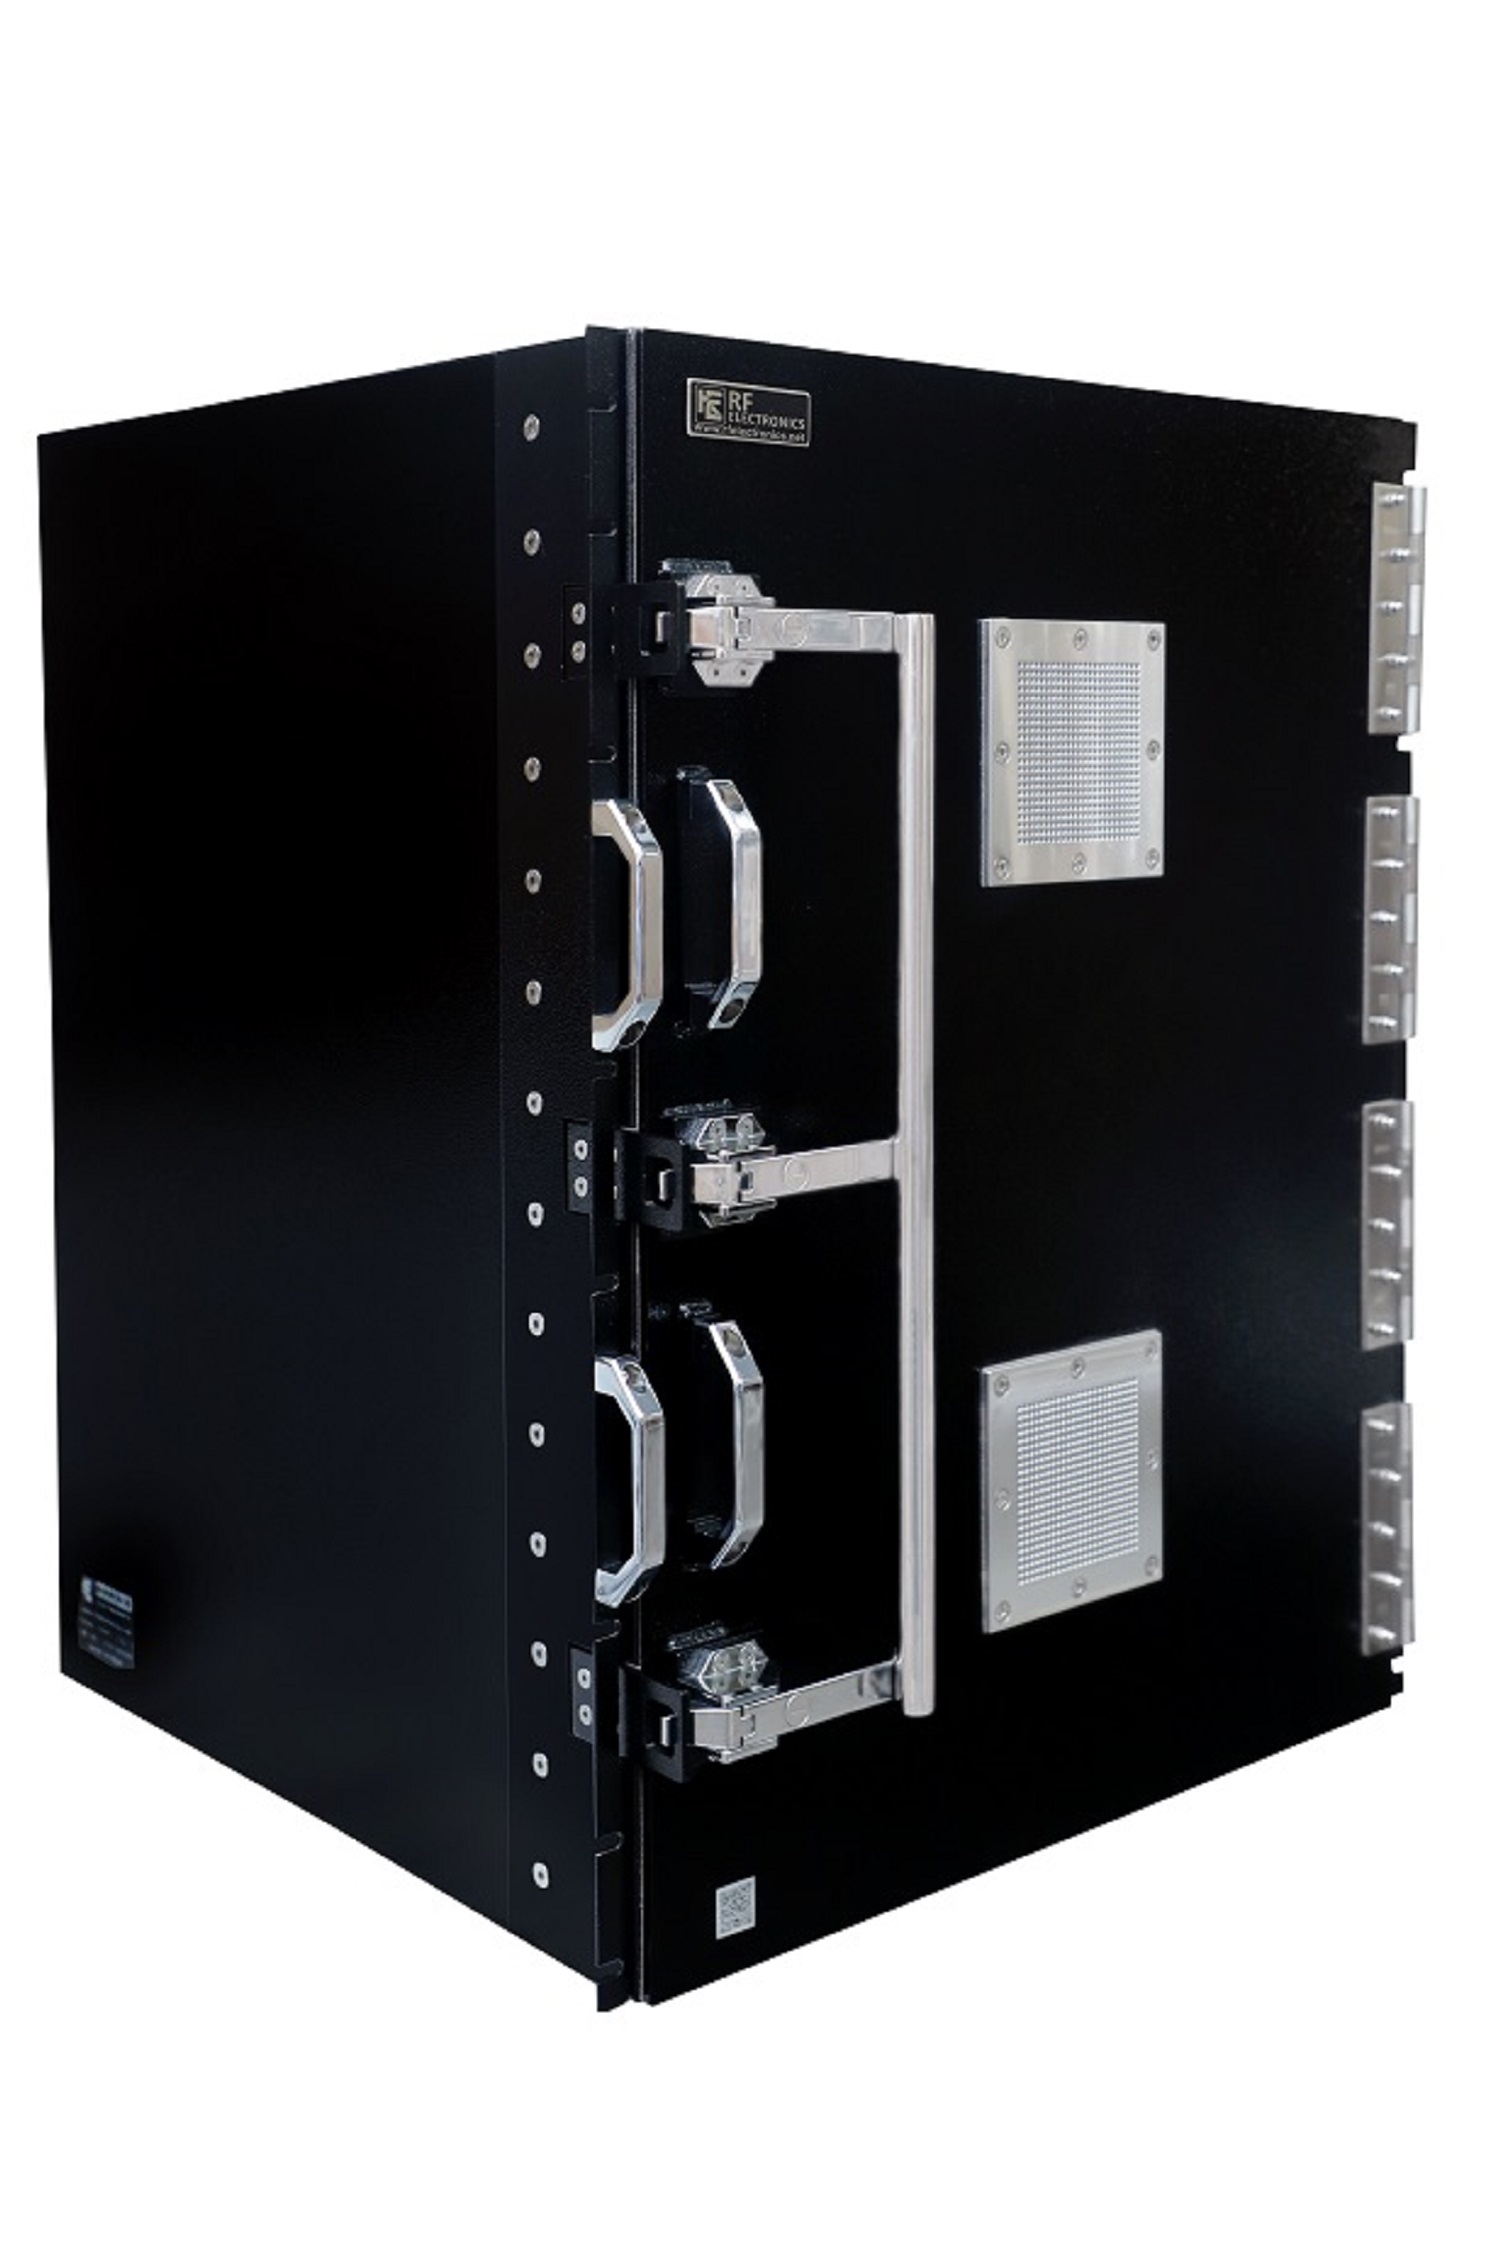 HDRF-3123-D RF Shield Test Box